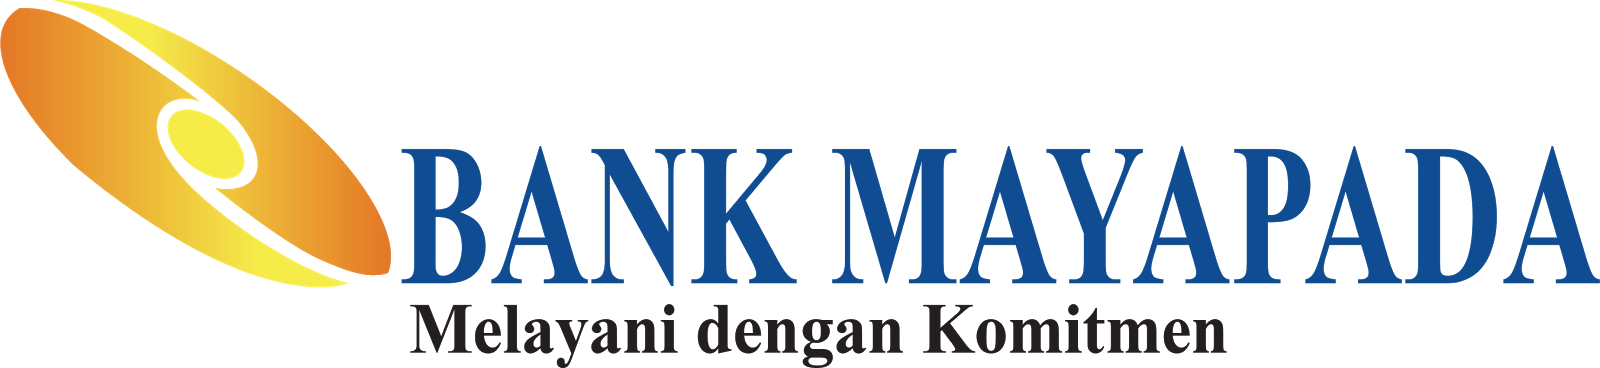 Bank Mayapada Internasional logo large (transparent PNG)